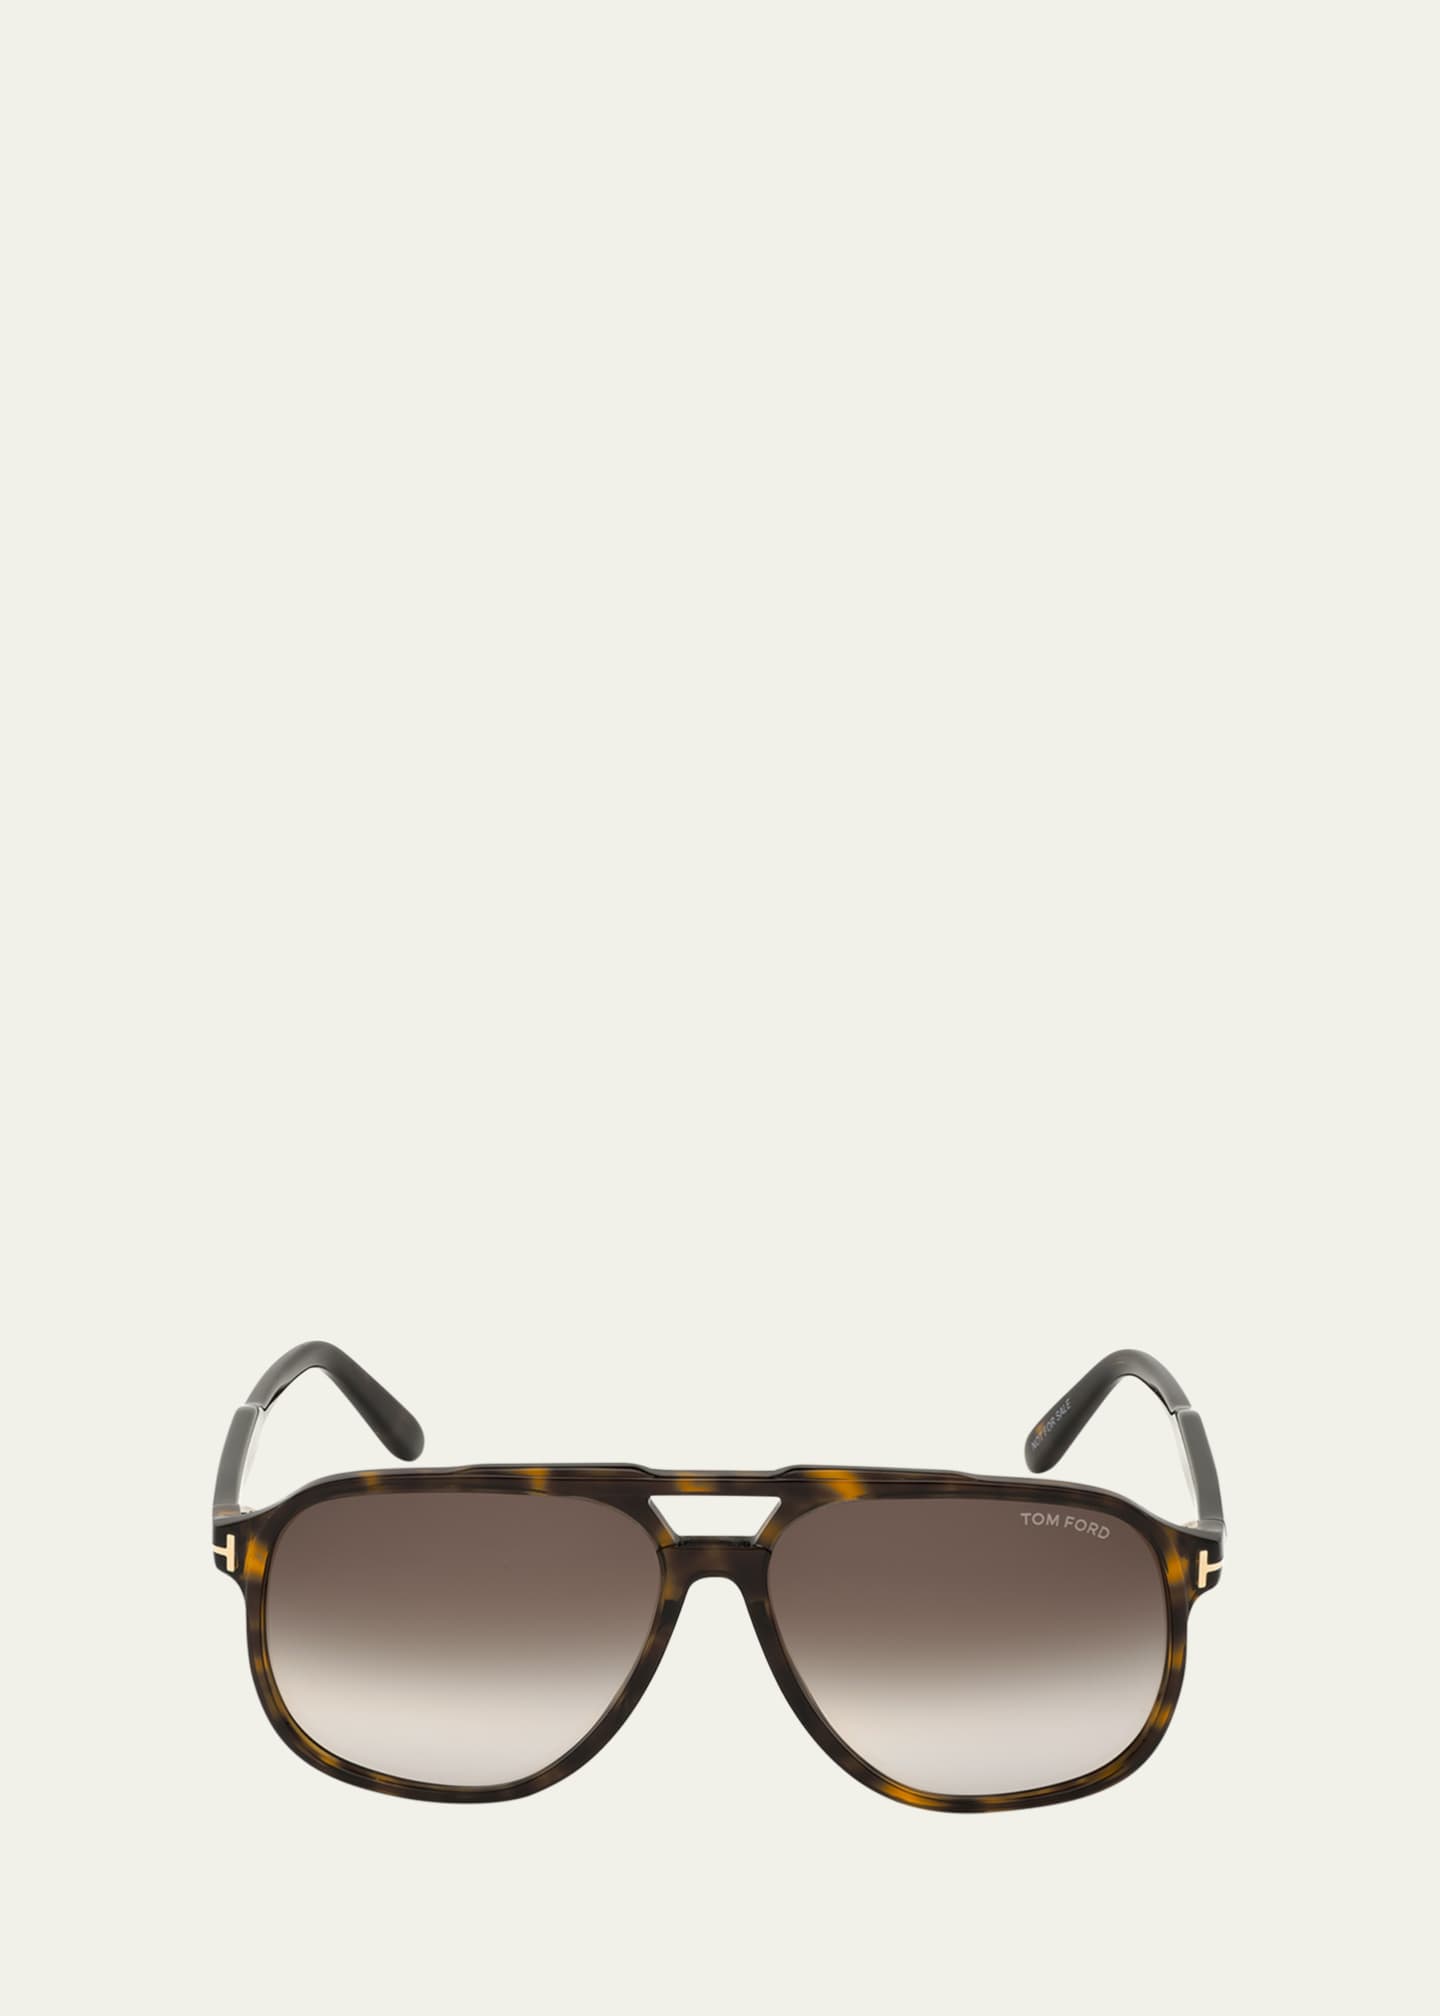 TOM FORD Men's Raoul Gradient Tortoiseshell Aviator Sunglasses ...